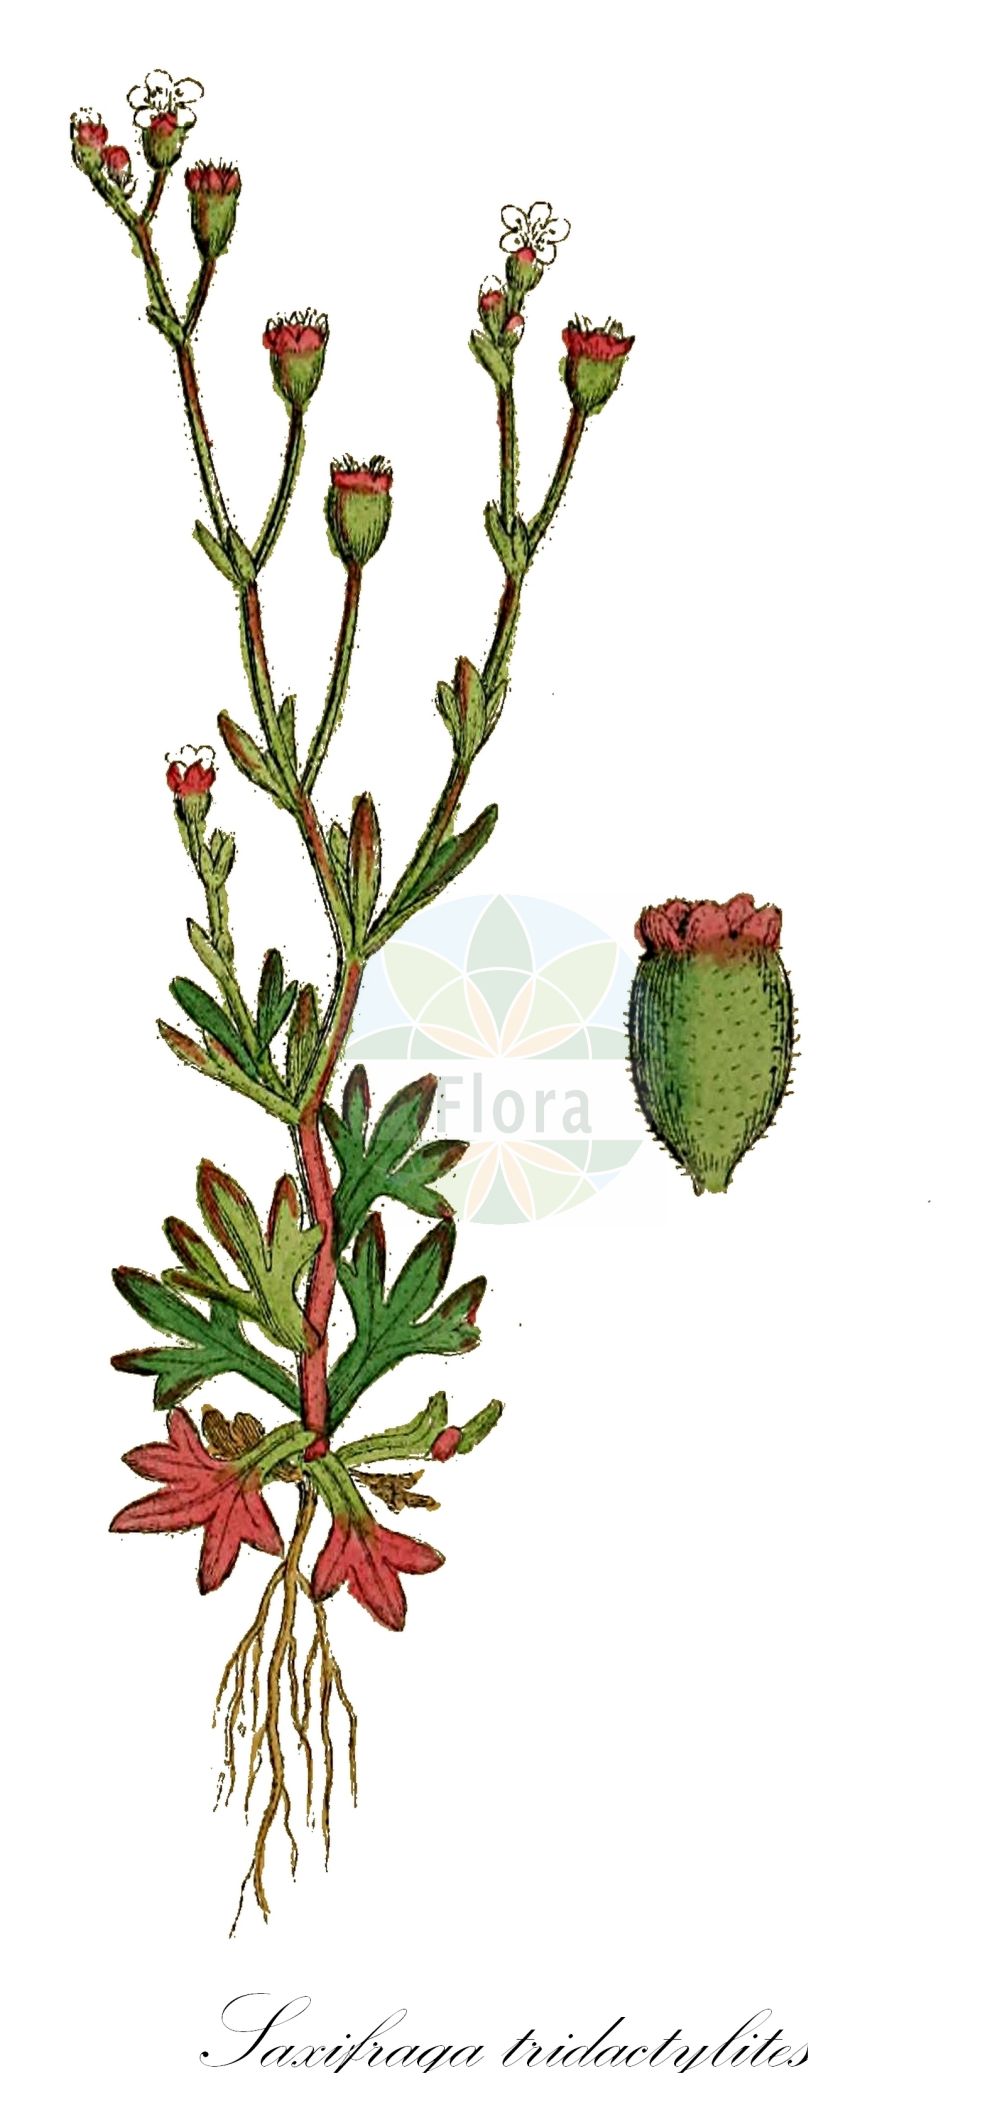 Historische Abbildung von Saxifraga tridactylites (Dreifinger-Steinbrech - Rue-leaved Saxifrage). Das Bild zeigt Blatt, Bluete, Frucht und Same. ---- Historical Drawing of Saxifraga tridactylites (Dreifinger-Steinbrech - Rue-leaved Saxifrage). The image is showing leaf, flower, fruit and seed.(Saxifraga tridactylites,Dreifinger-Steinbrech,Rue-leaved Saxifrage,Saxifraga tridactylites,Saxifraga tridactylites L. subsp.,Dreifinger-Steinbrech,Rue-leaved Saxifrage,Rueleaf Saxifrage,Saxifraga,Steinbrech,Saxifrage,Saxifragaceae,Steinbrechgewächse,Saxifrage family,Blatt,Bluete,Frucht,Same,leaf,flower,fruit,seed,Sowerby (1790-1813))